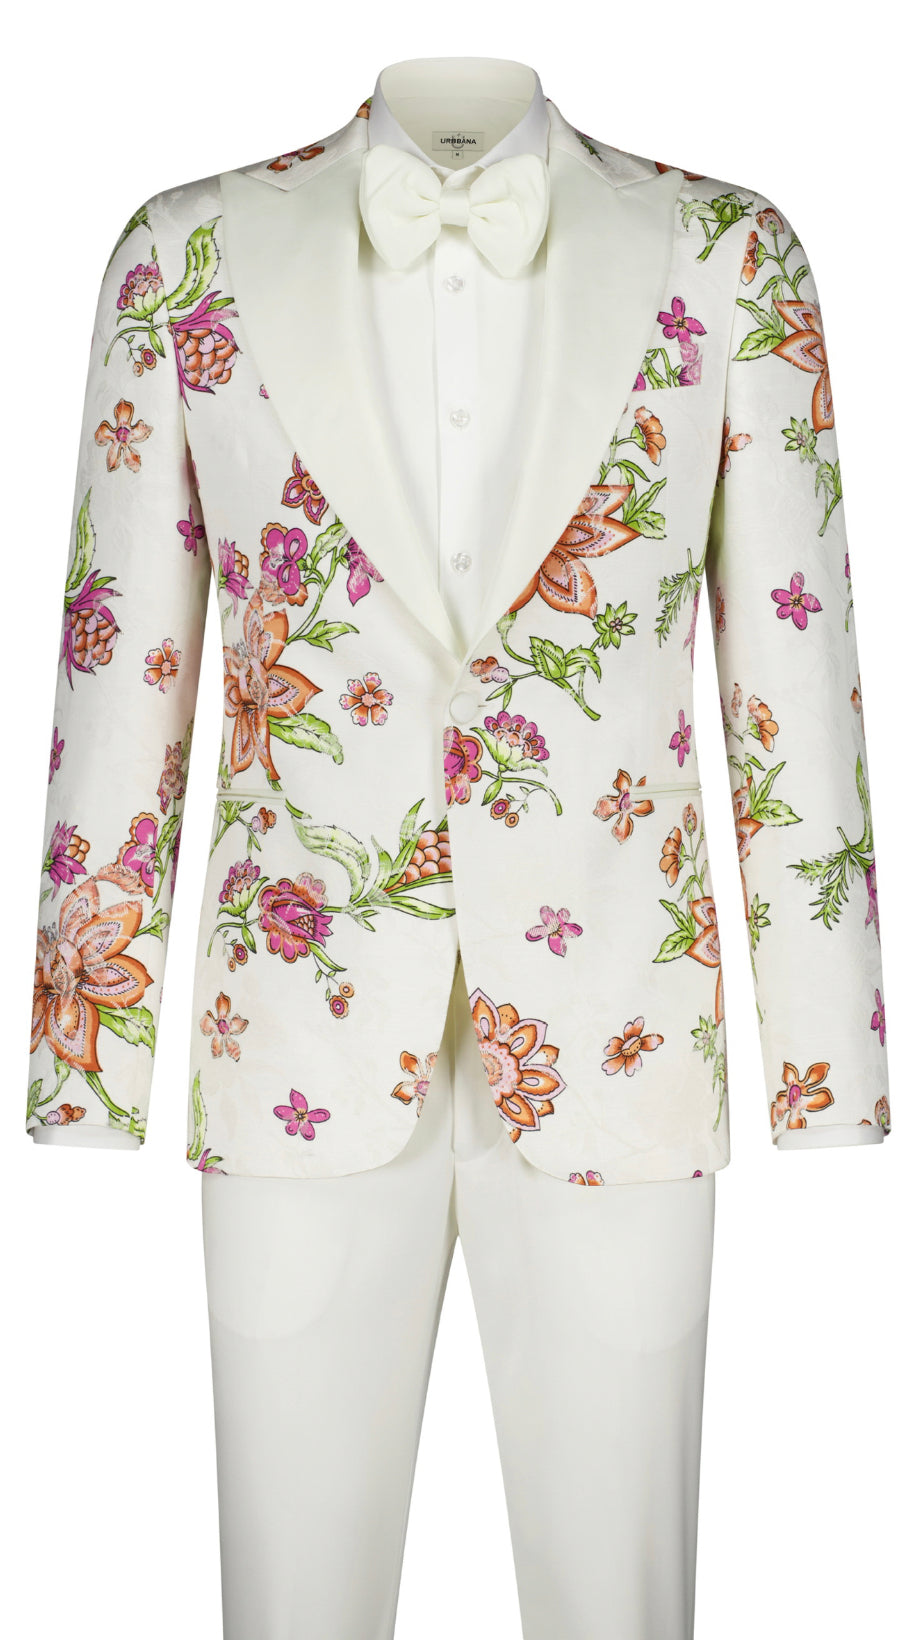 The Gardenia Ceremony Suit